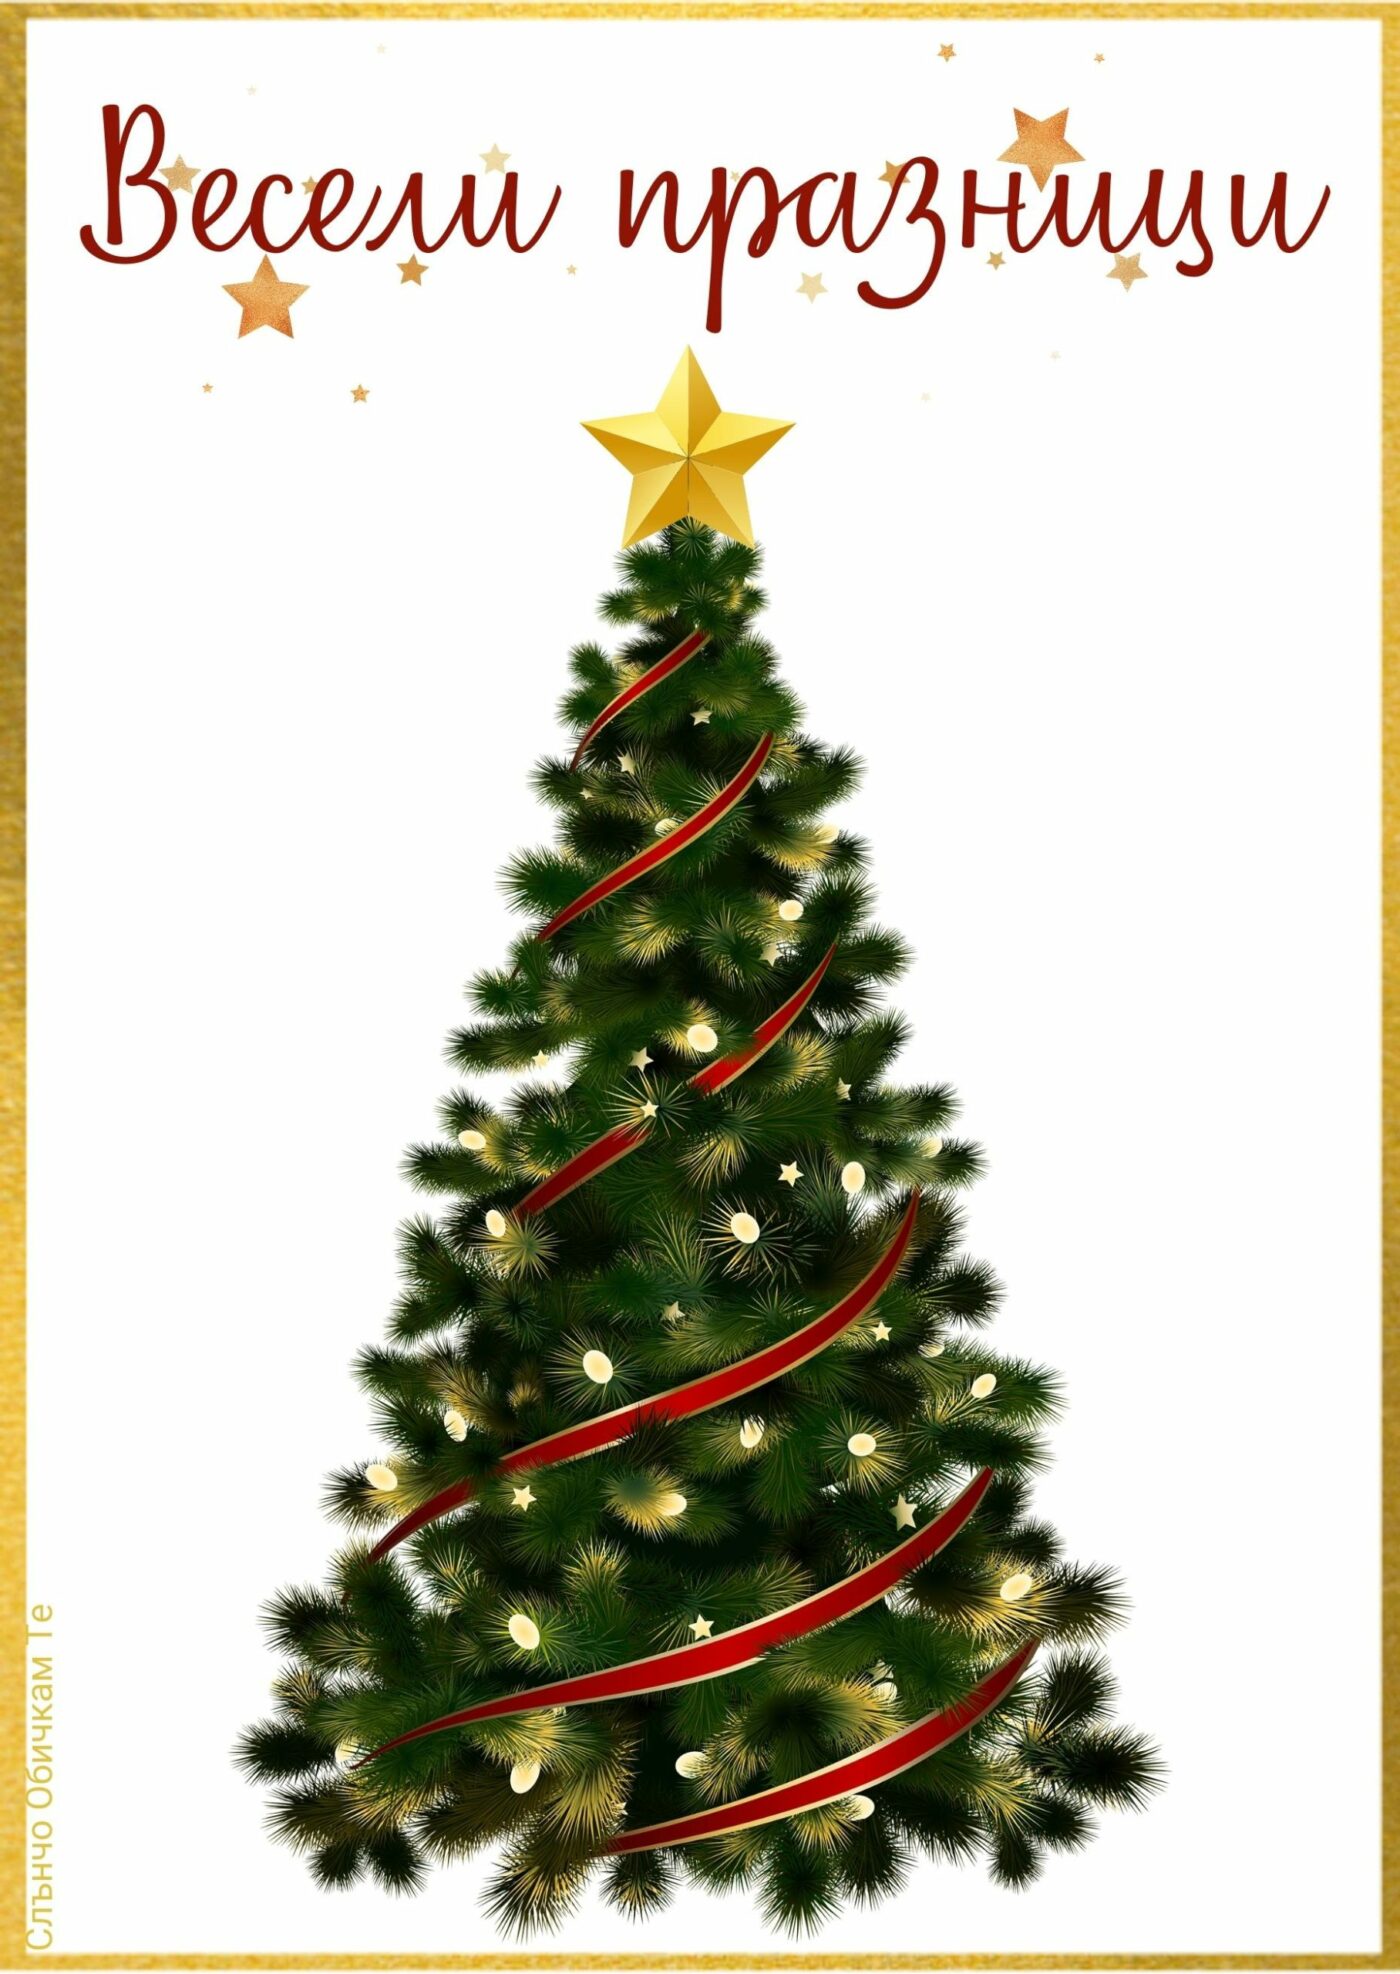 Весели празници картичка с елха - картички за коледа, коледни пожелания, весела коледа, честито рождество христово